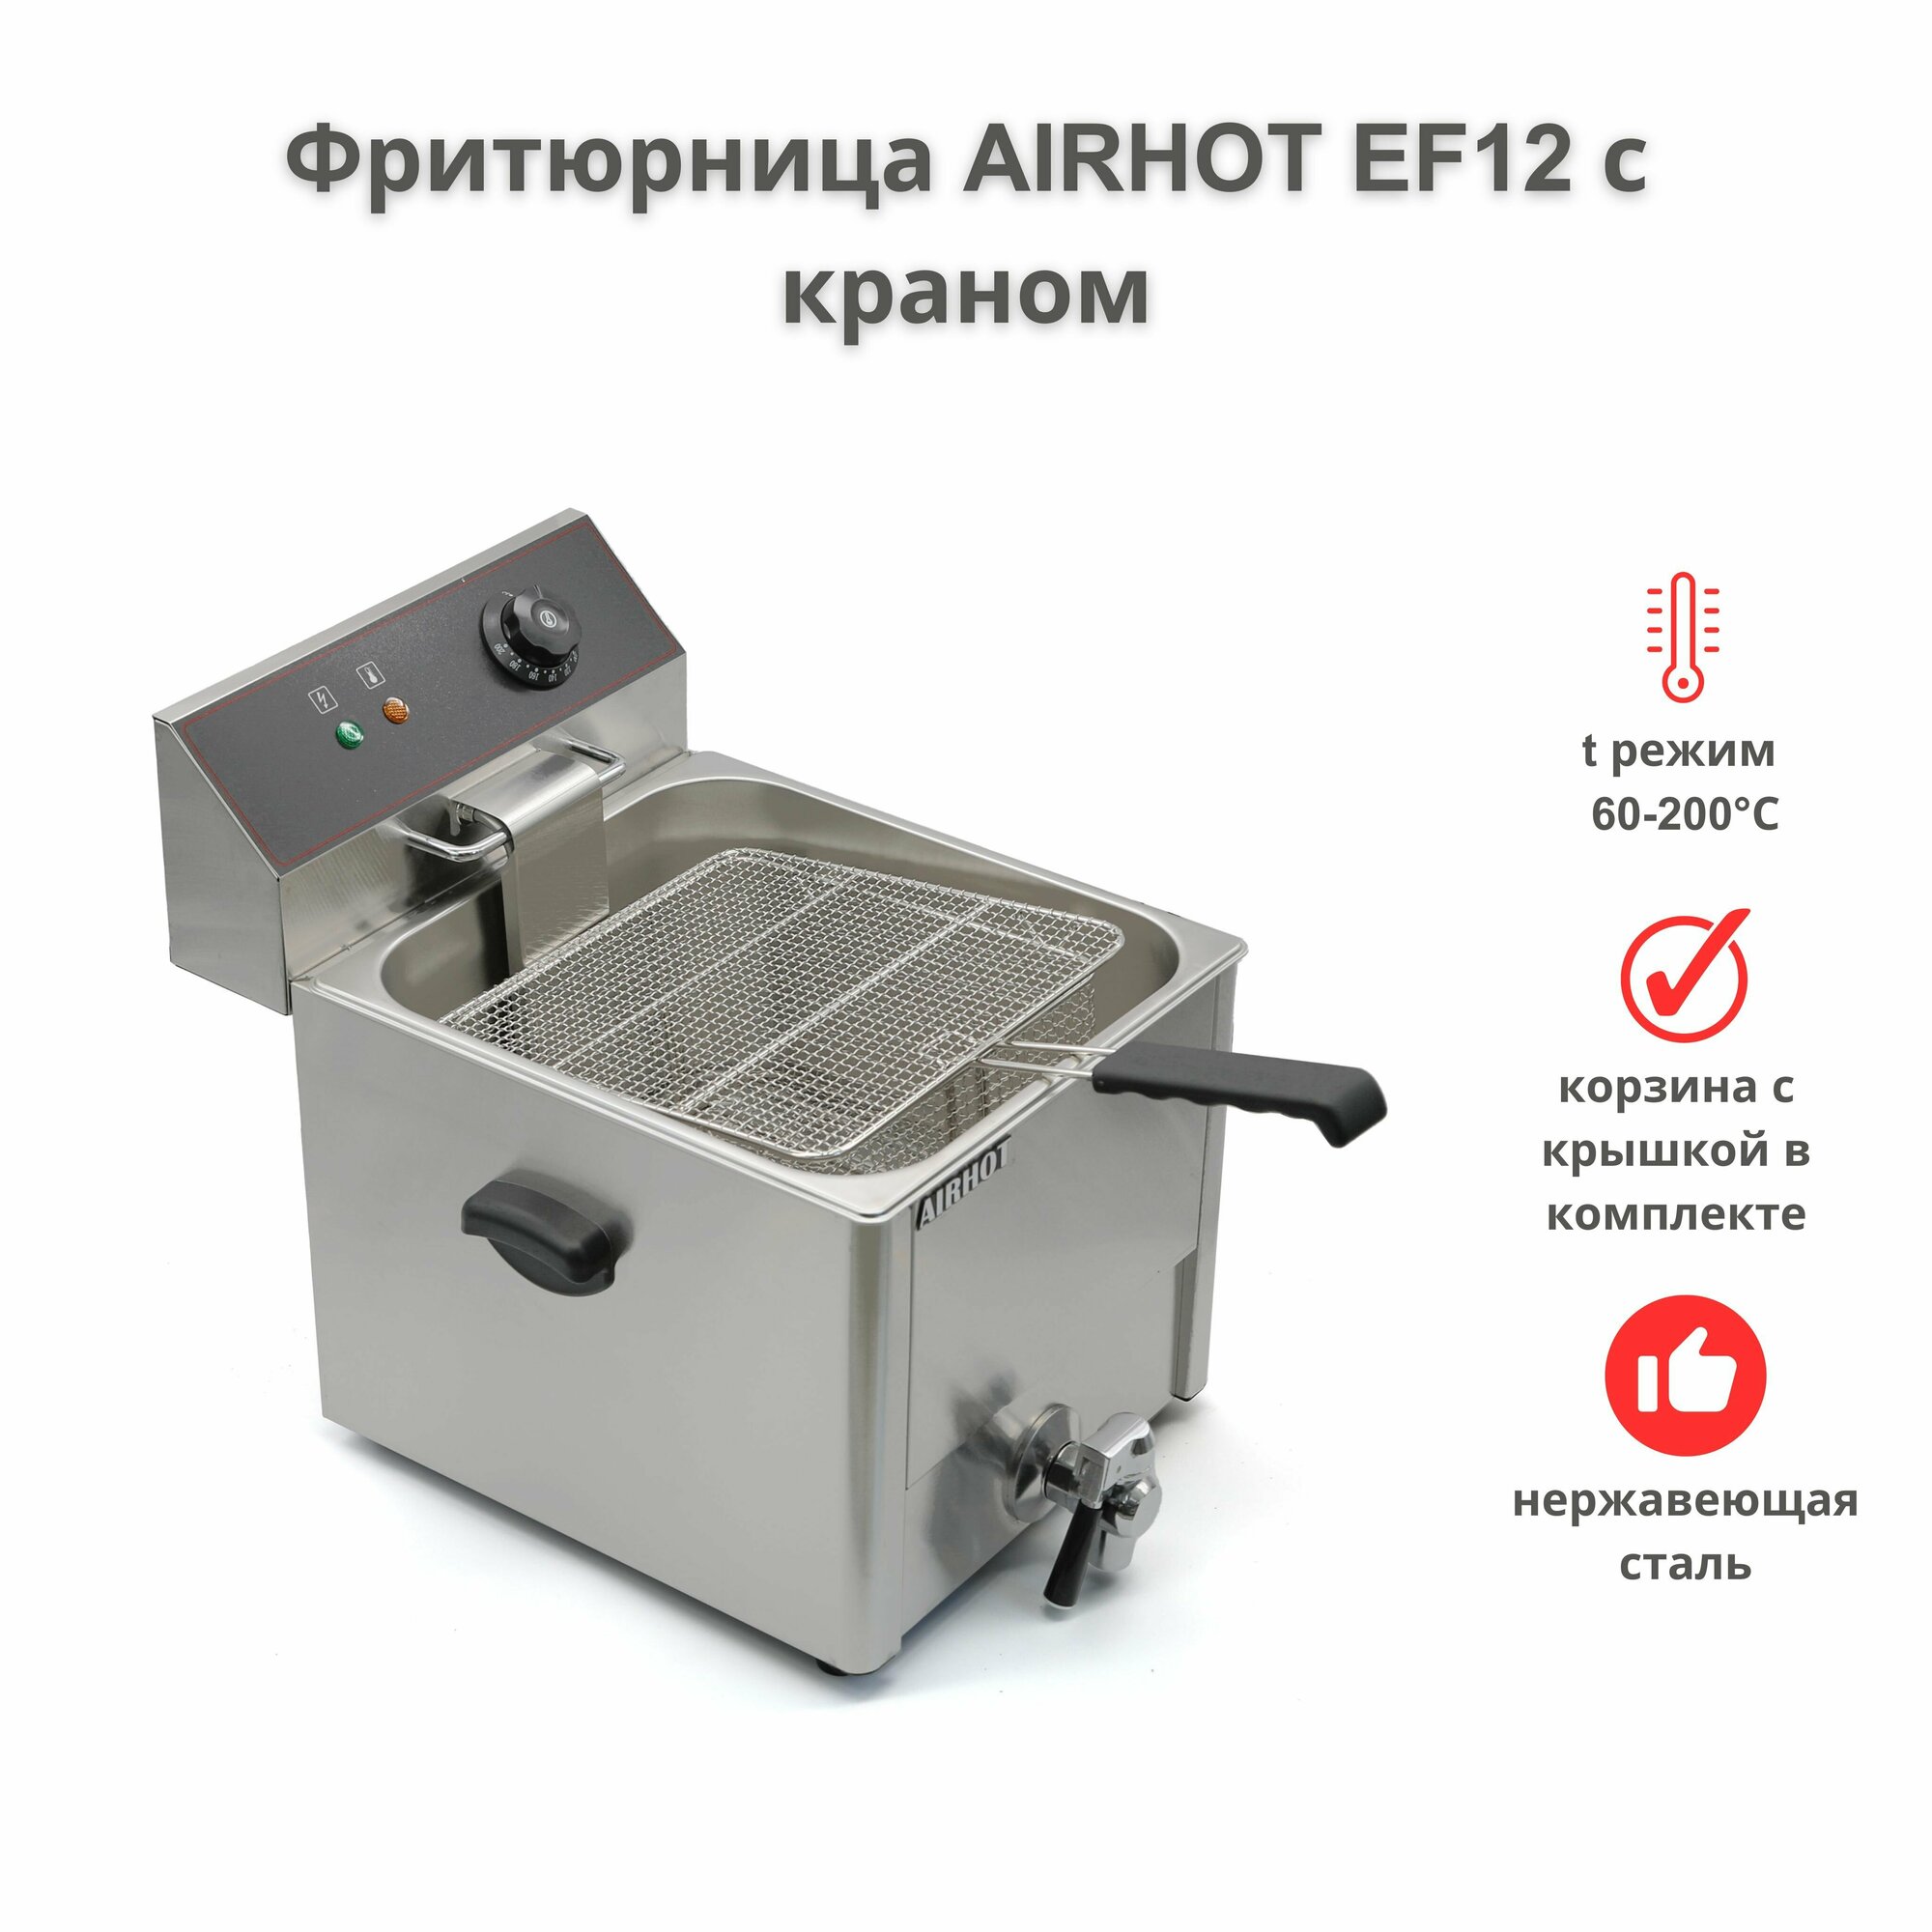 Фритюрница AIRHOT EF12 с краном, объем 12л, фритюрница профессиональная для кафе, ресторана, электрофритюрница, 3,25кВт